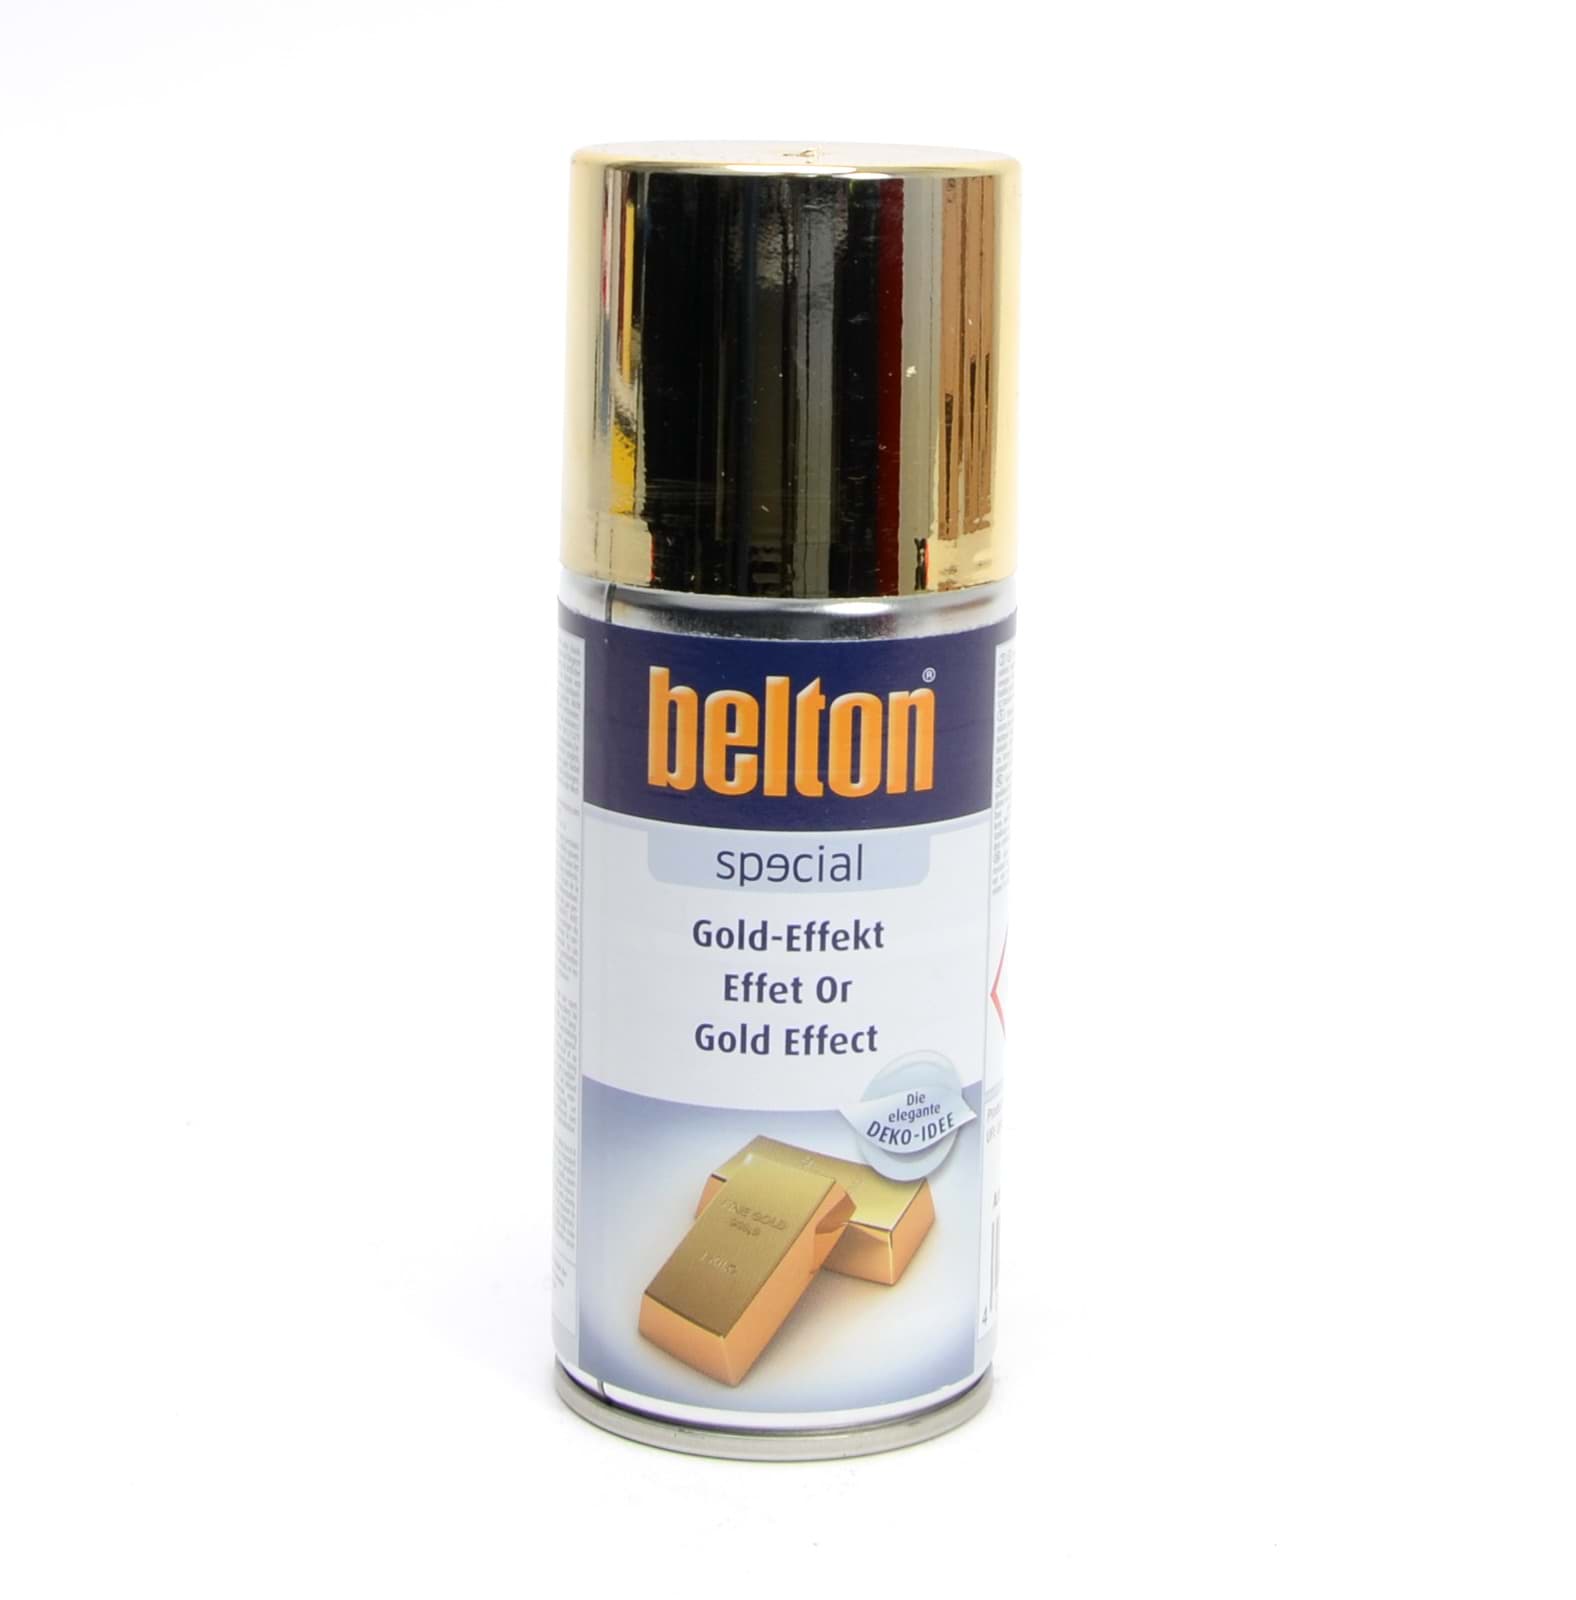 Picture of Belton SPECIAL GOLD-EFFEKT 150ml